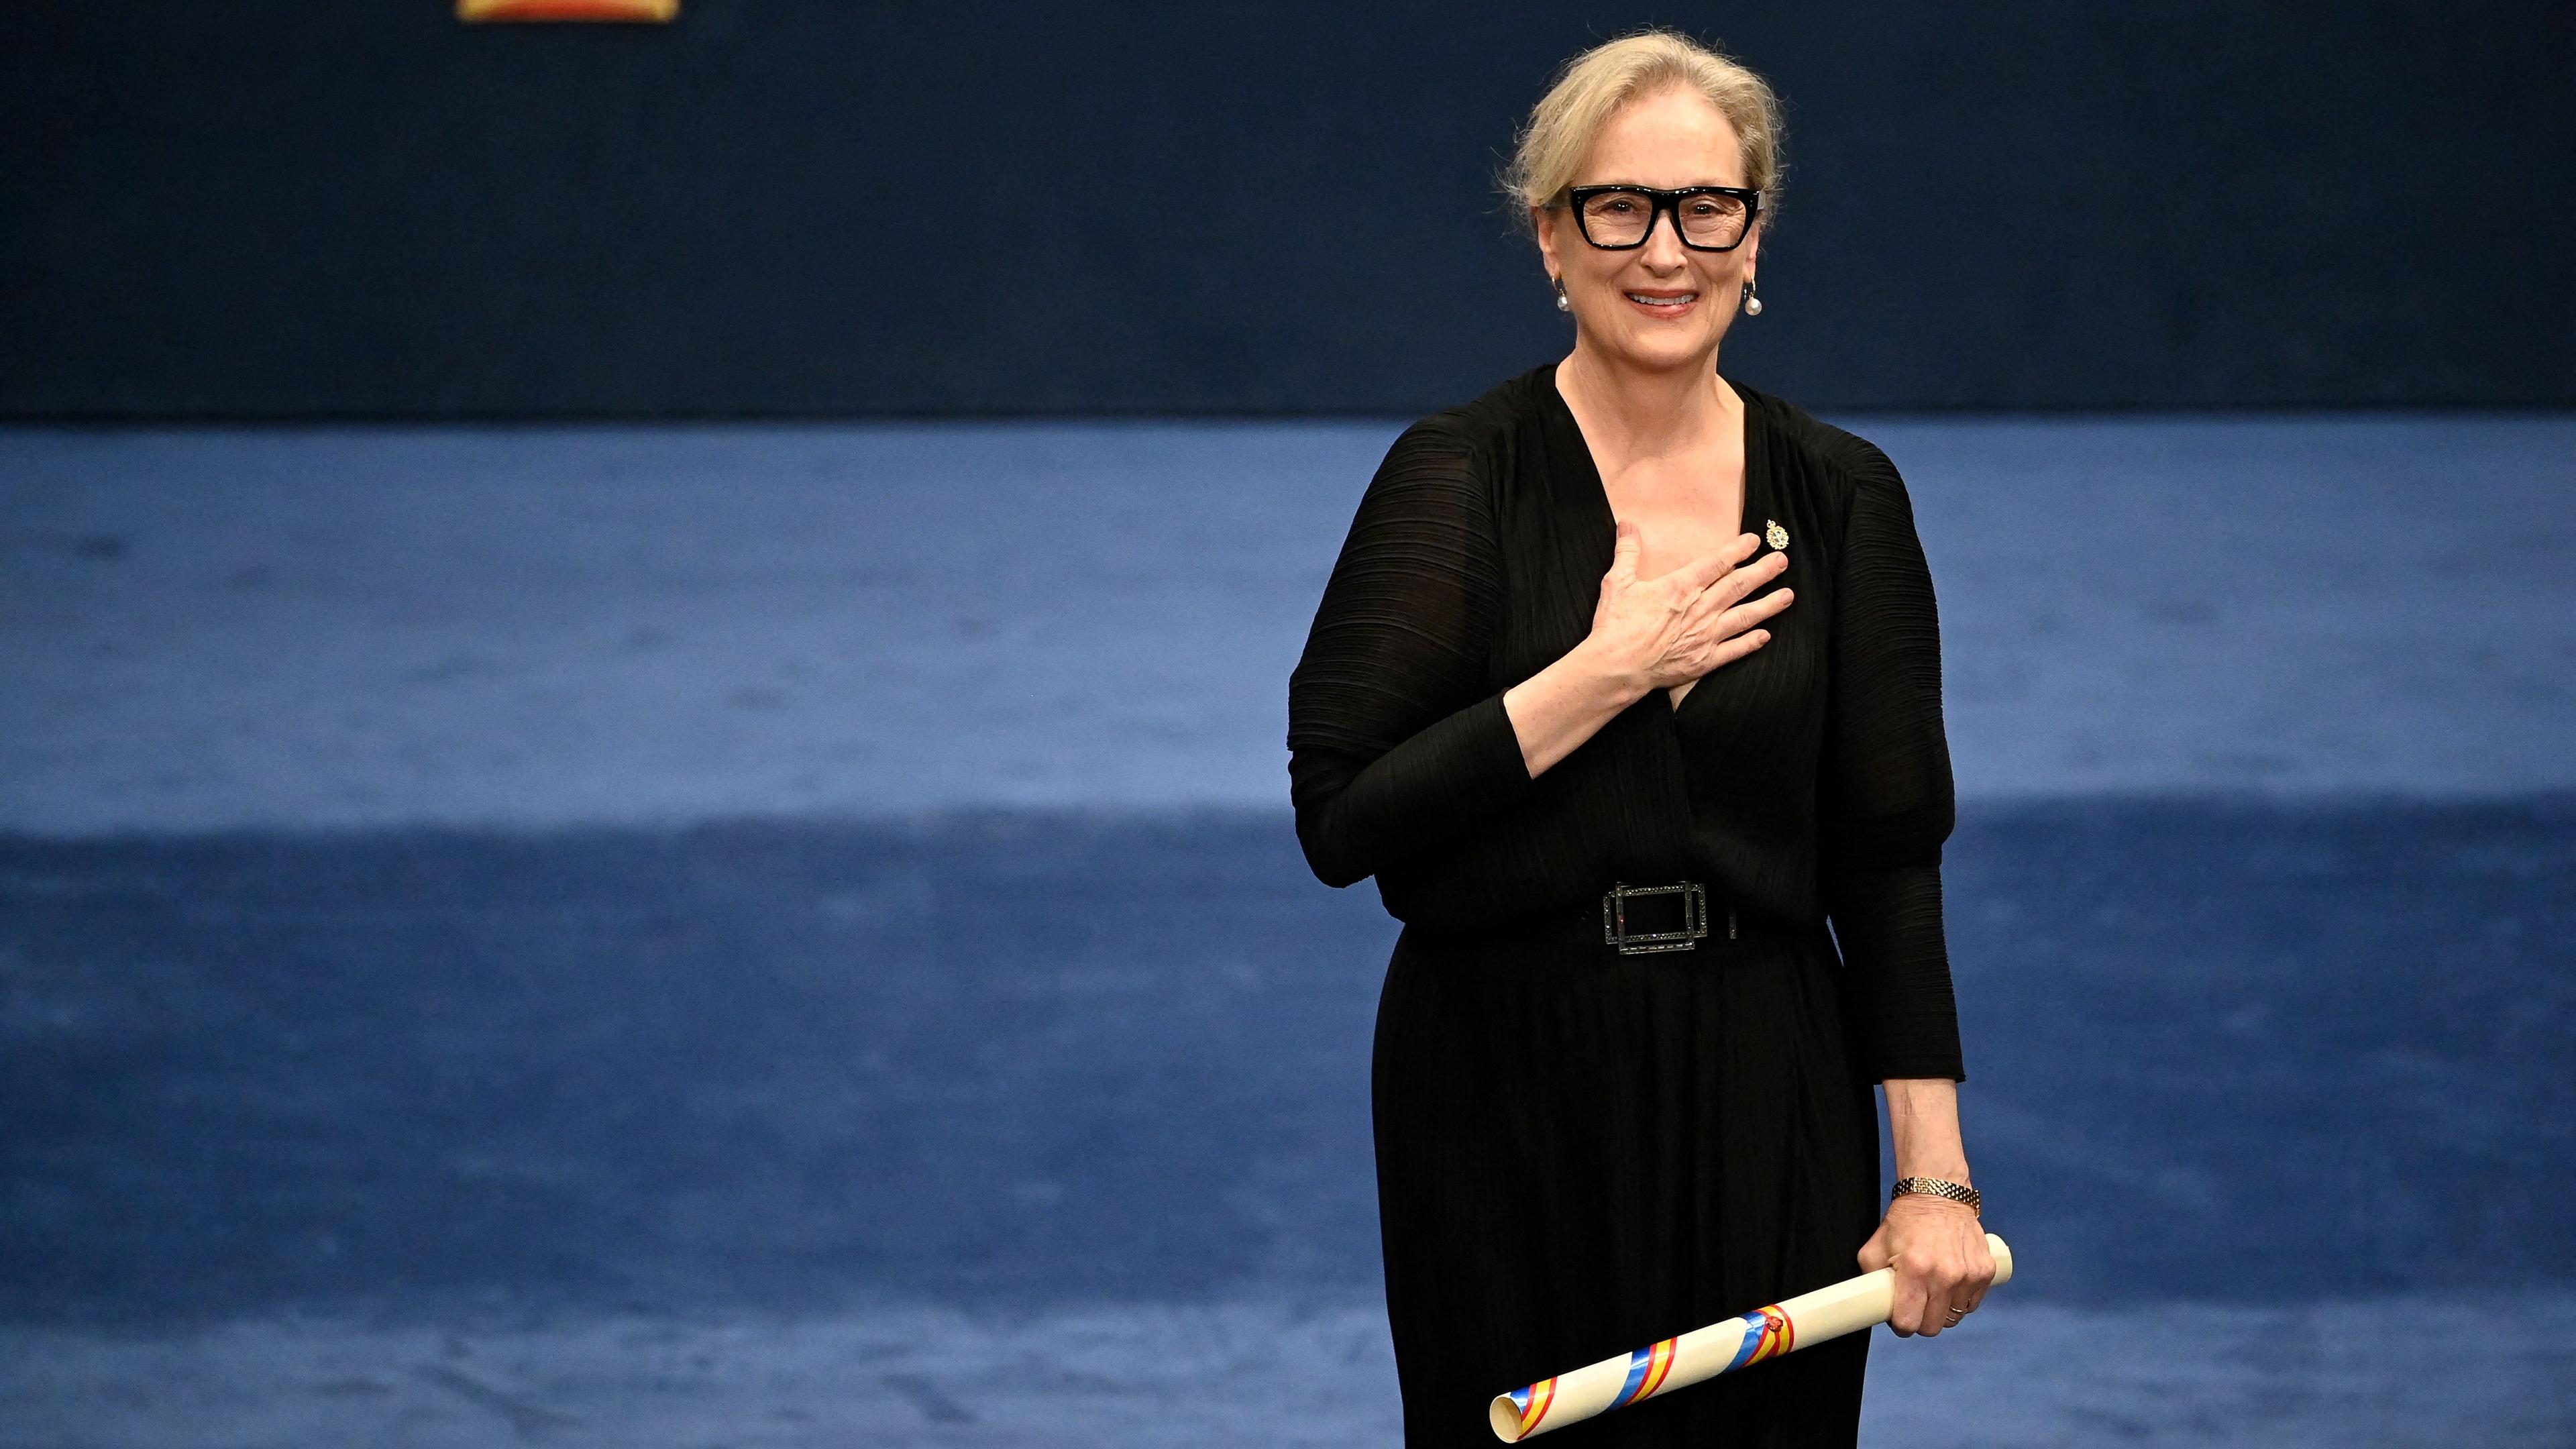 Ehre für Meryl Streep: Die Oscar-Preisträgerin ist mit dem renommierten Prinzessin-von-Asturien-Preis in der Sparte Künste geehrt worden. Er gilt als „Spanischer Nobelpreis“.